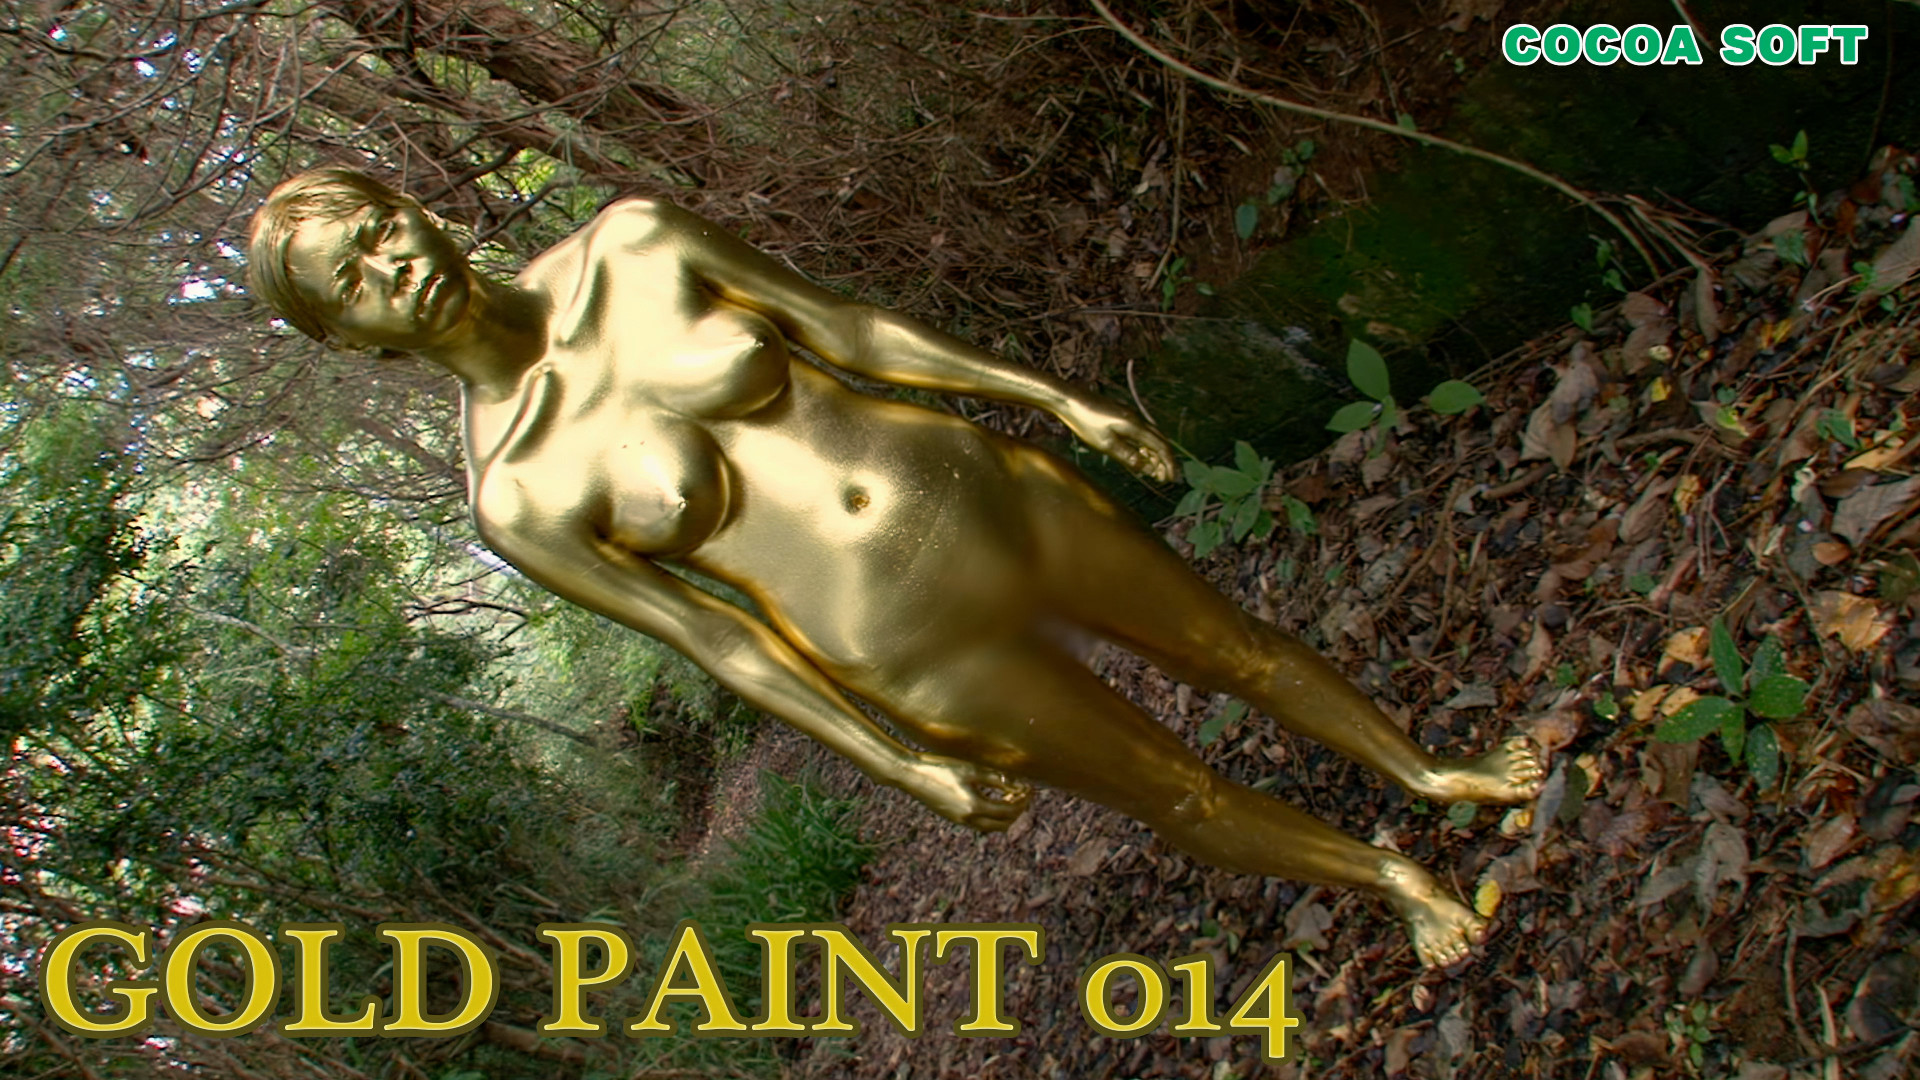 GOLD PAINT 014